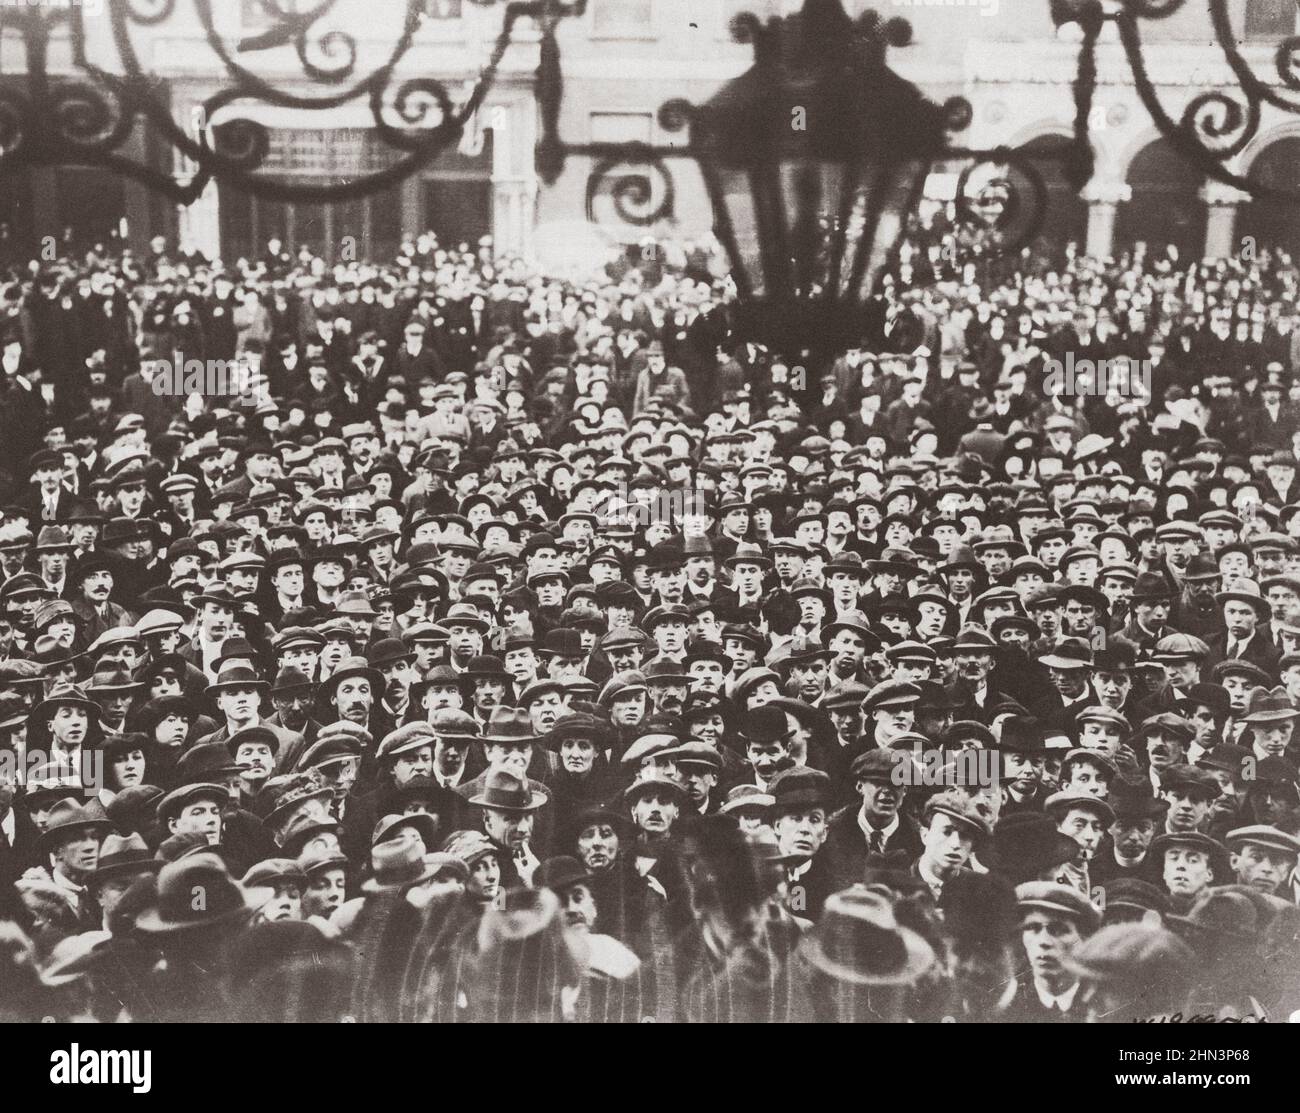 Proklamation der Irischen Republik im Mansion House, Dublin, Irland. 21. Juni 1919 Menschenmenge vor dem Herrenhaus, als sich das Sinn Fein-Parlament zusammenstellte. Stockfoto